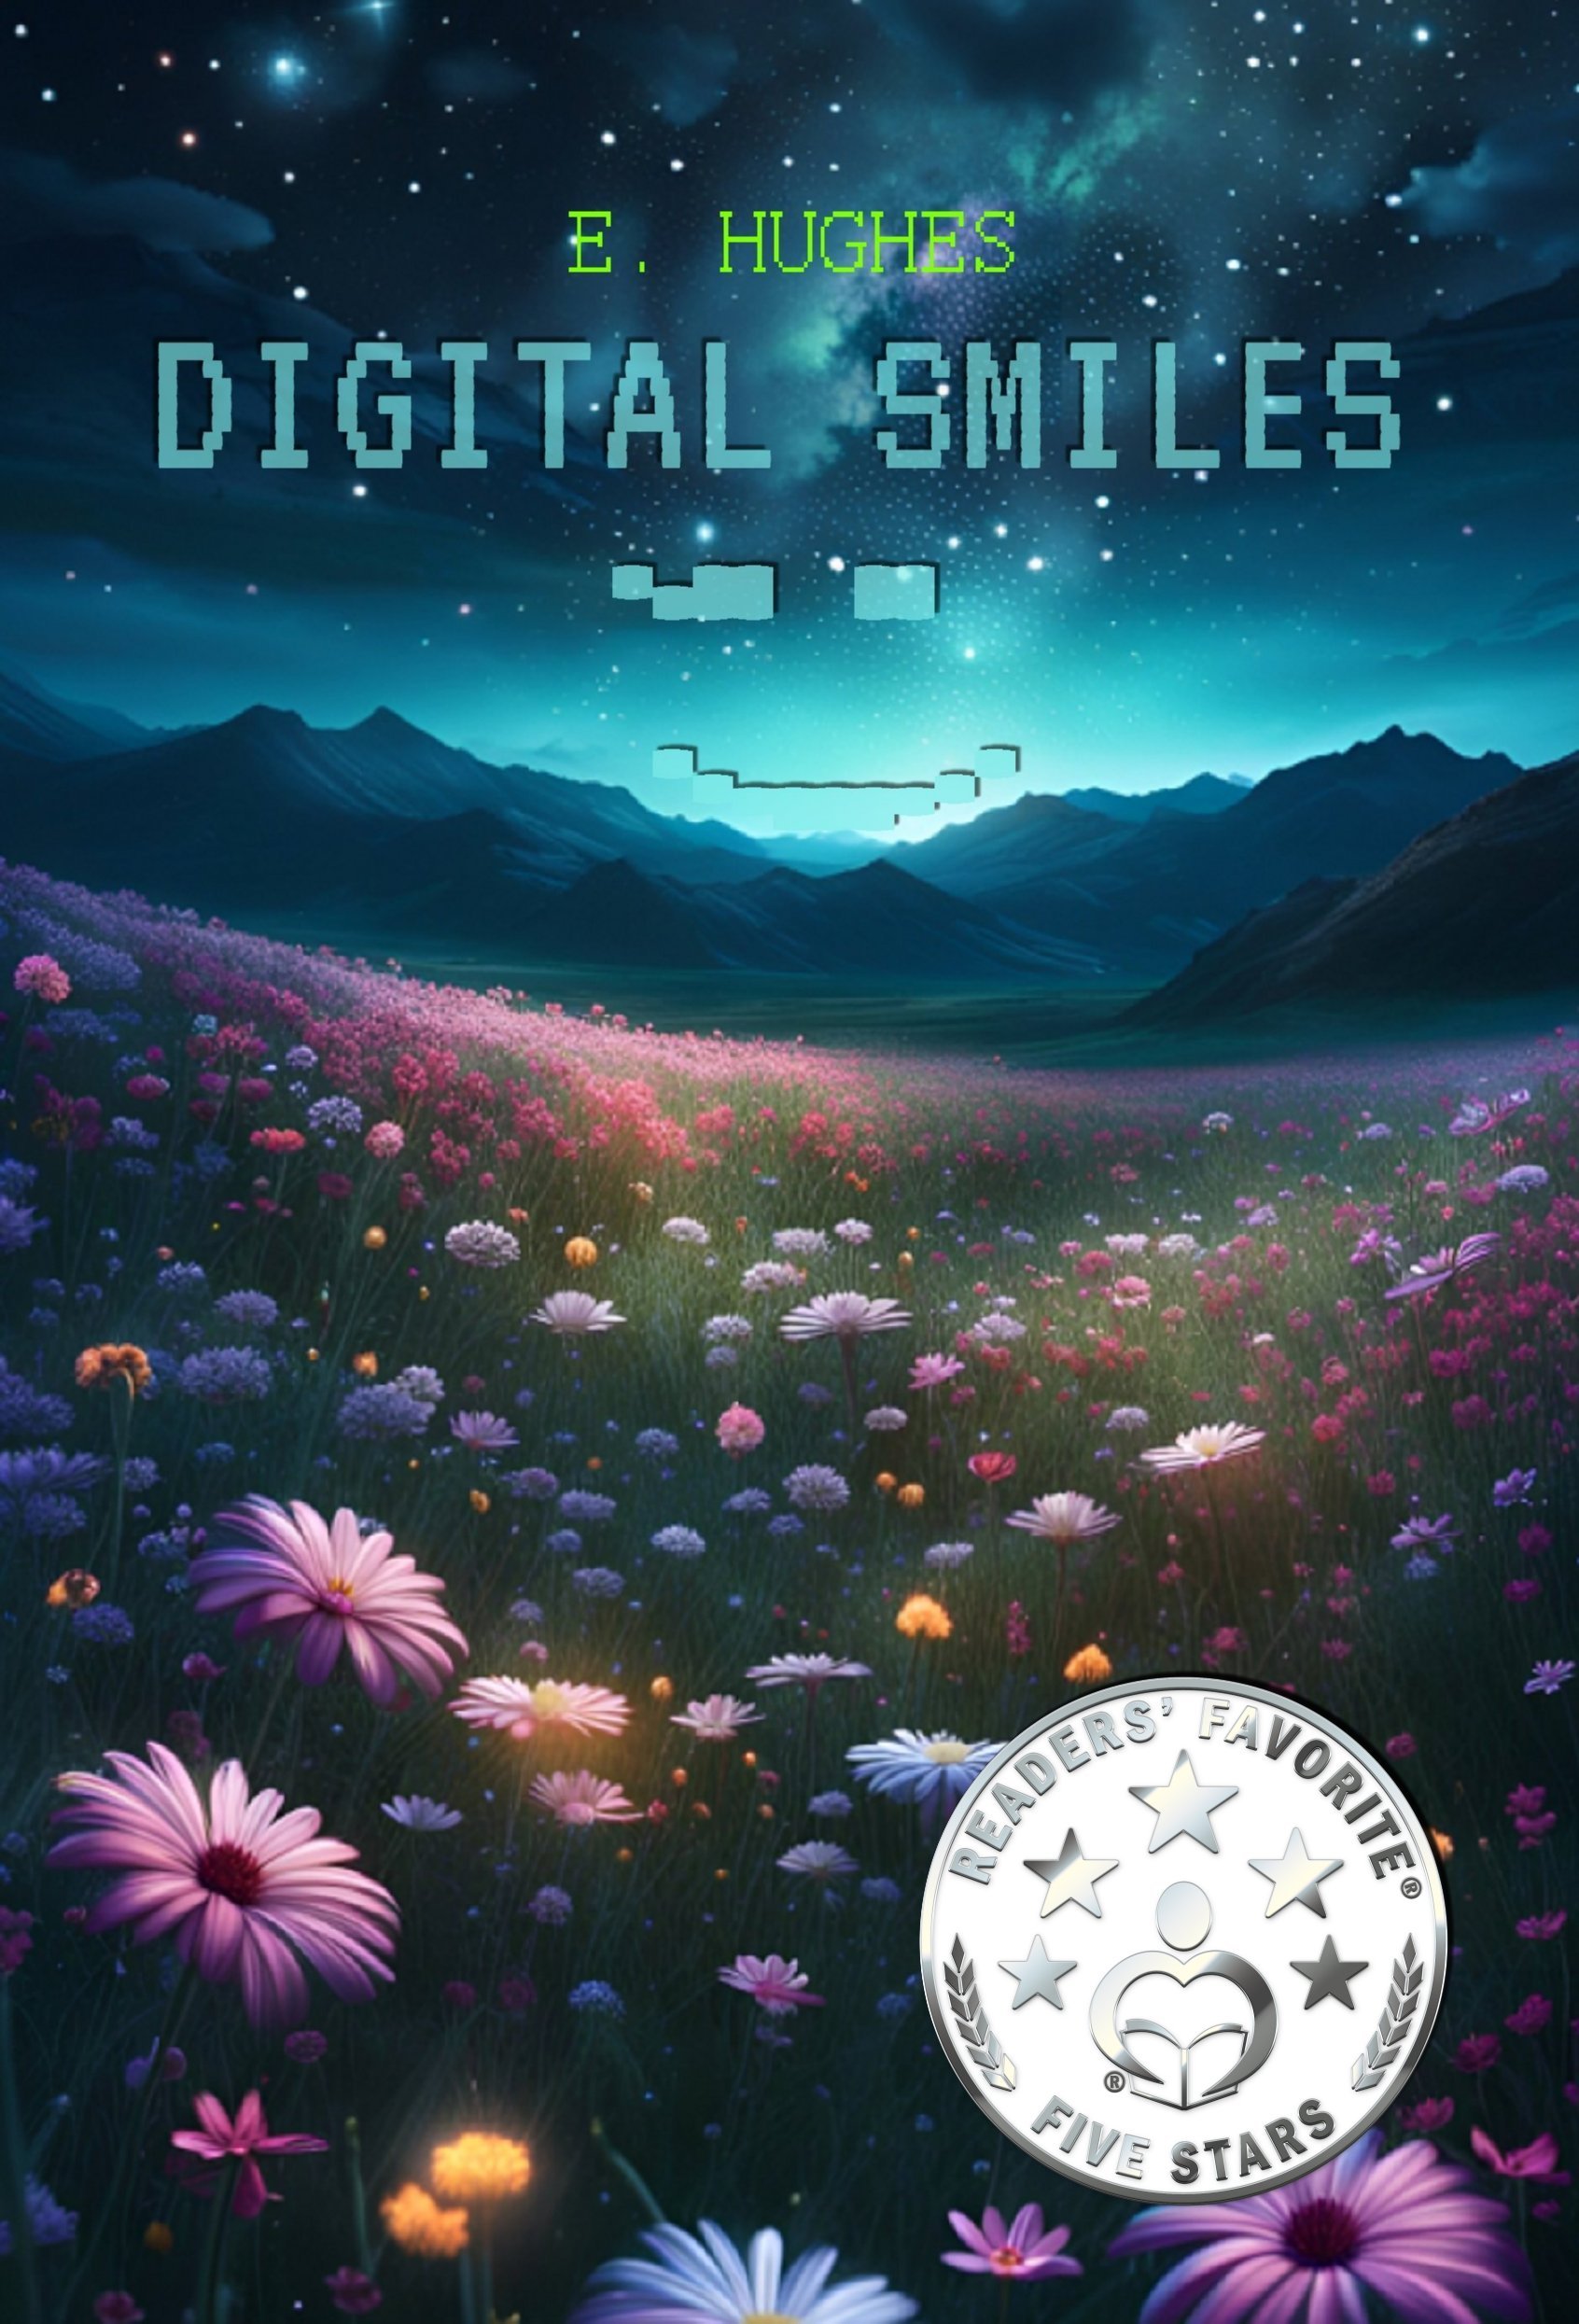 Digital Smiles by E. Hughes - 5 star.jpg